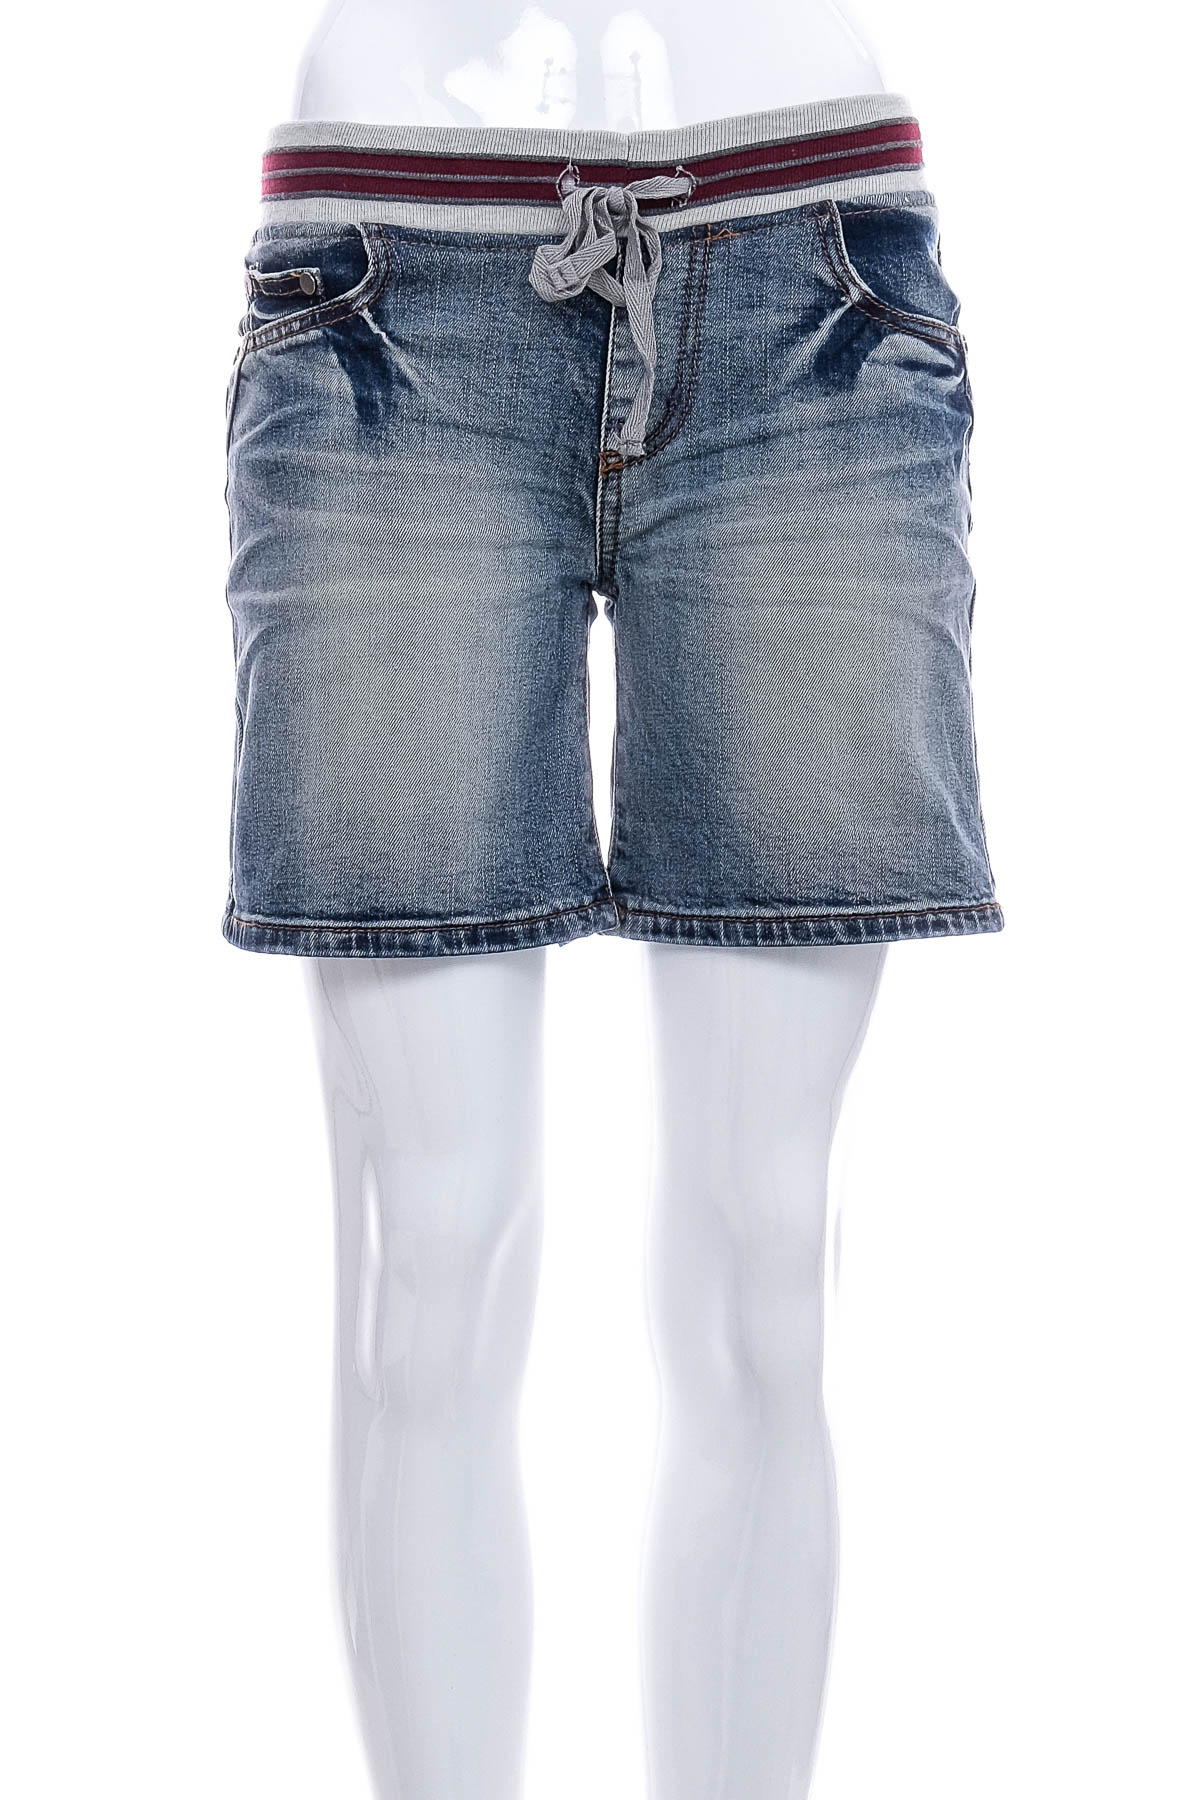 Female shorts - Cocablue - 0